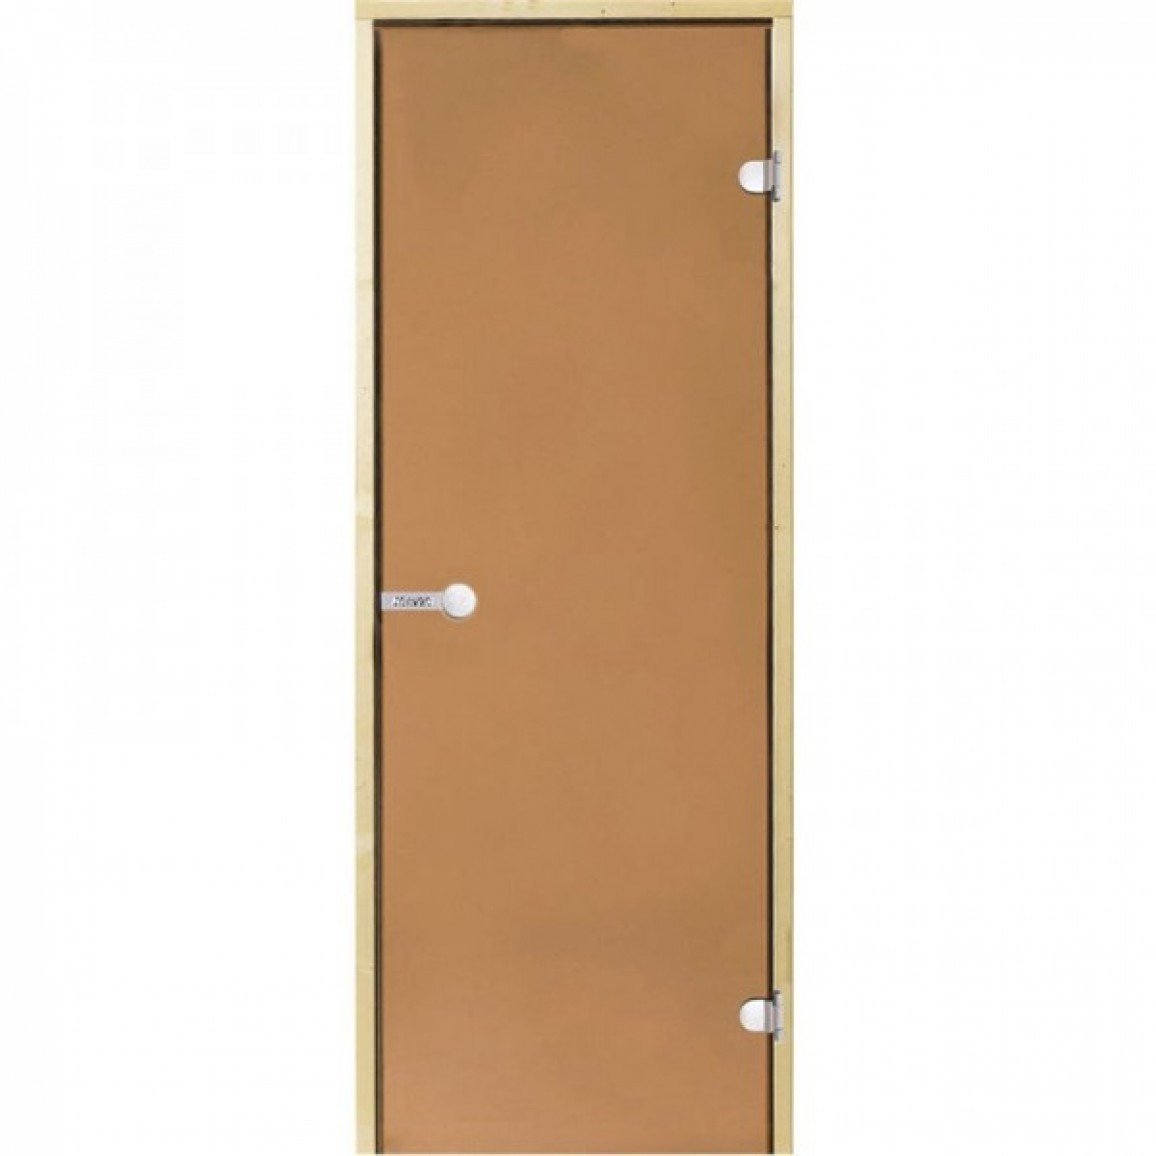 Стеклянная дверь для сауны Harvia 7/19, коробка сосна, бронза